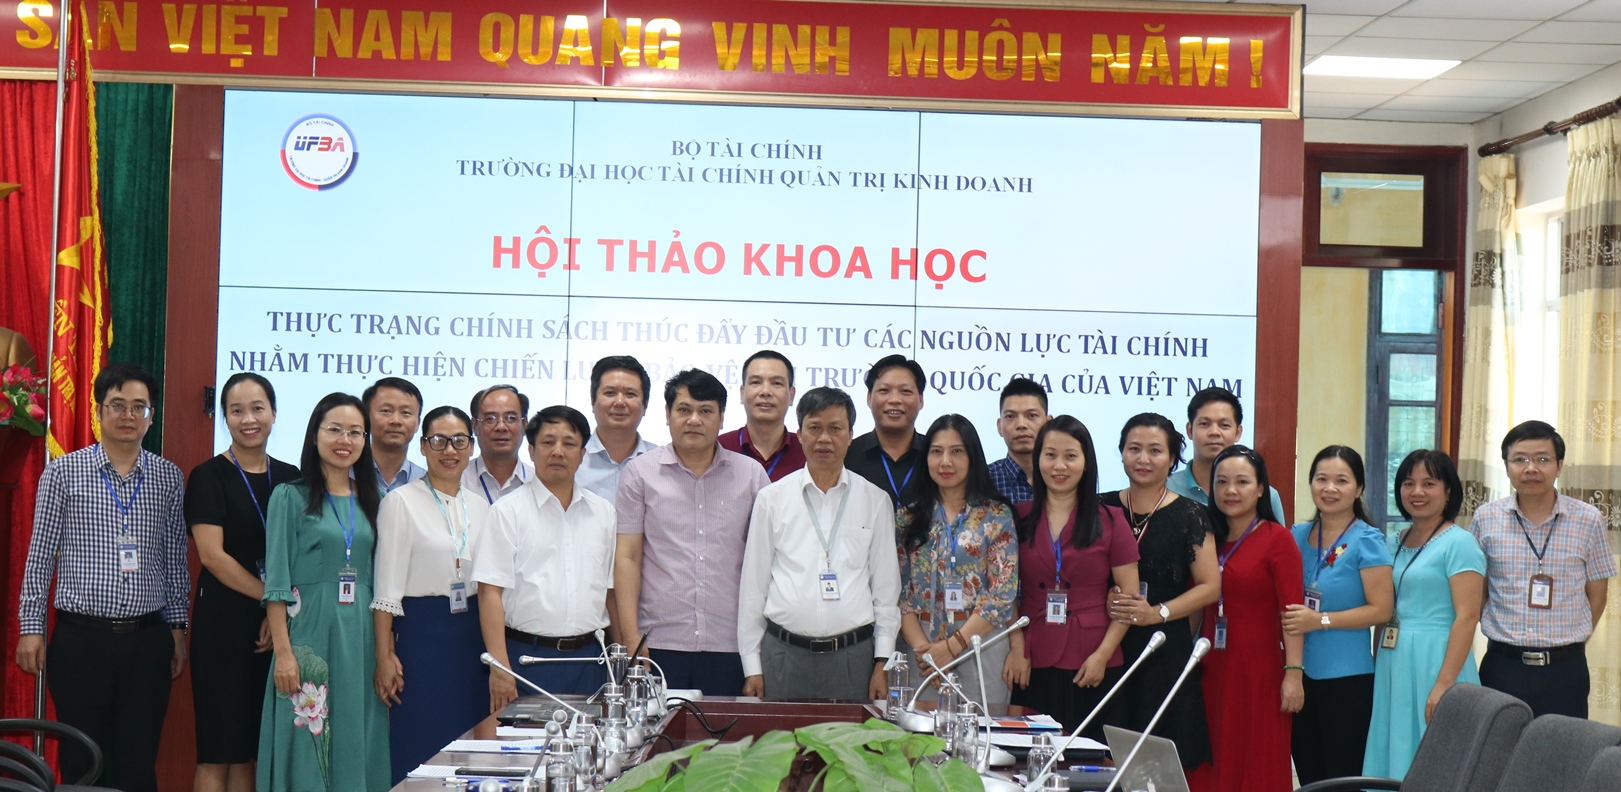 Hội thảo khoa học: “Thực trạng Chính sách thúc đẩy đầu tư các nguồn lực tài chính nhằm thực hiện chiến lược bảo vệ môi trường quốc gia của Việt Nam”